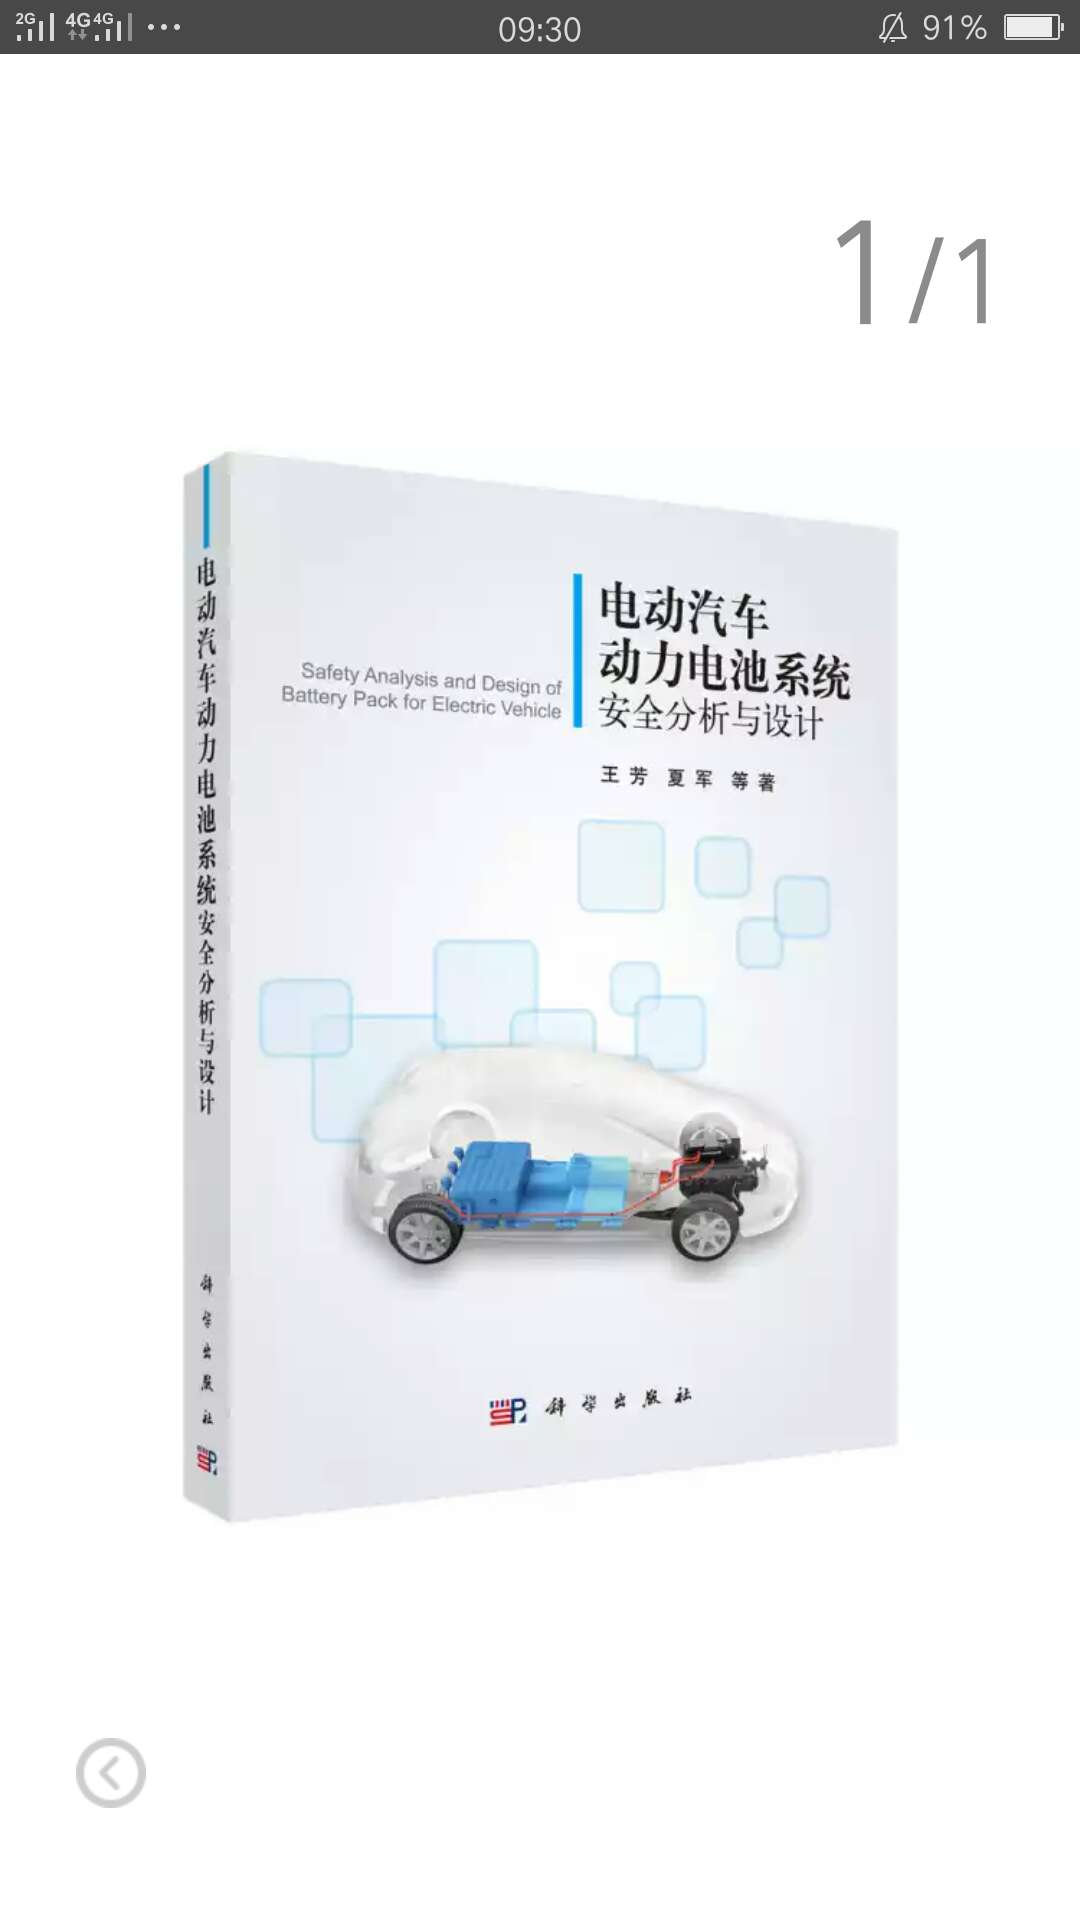 这是一本关于电动汽车电池系统，全面权威的书籍，看了看挺好的。值得拥有